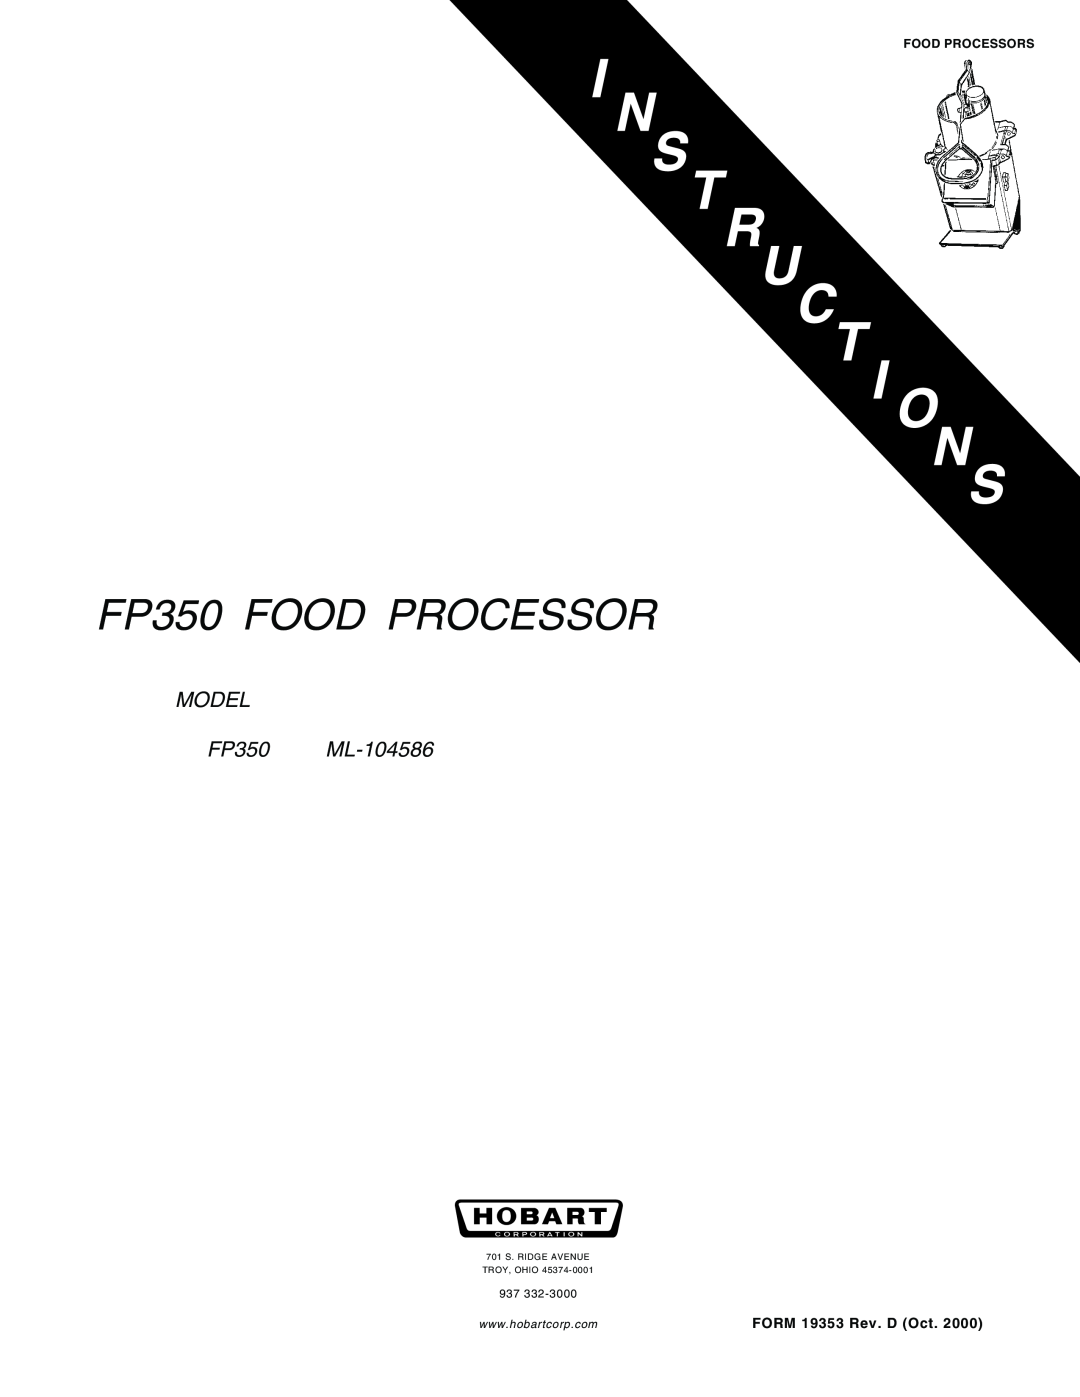 Hobart manual FP350 FOOD PROCESSOR, MODEL FP350 ML-104586, FORM 19353 Rev. D Oct, Food Processors 